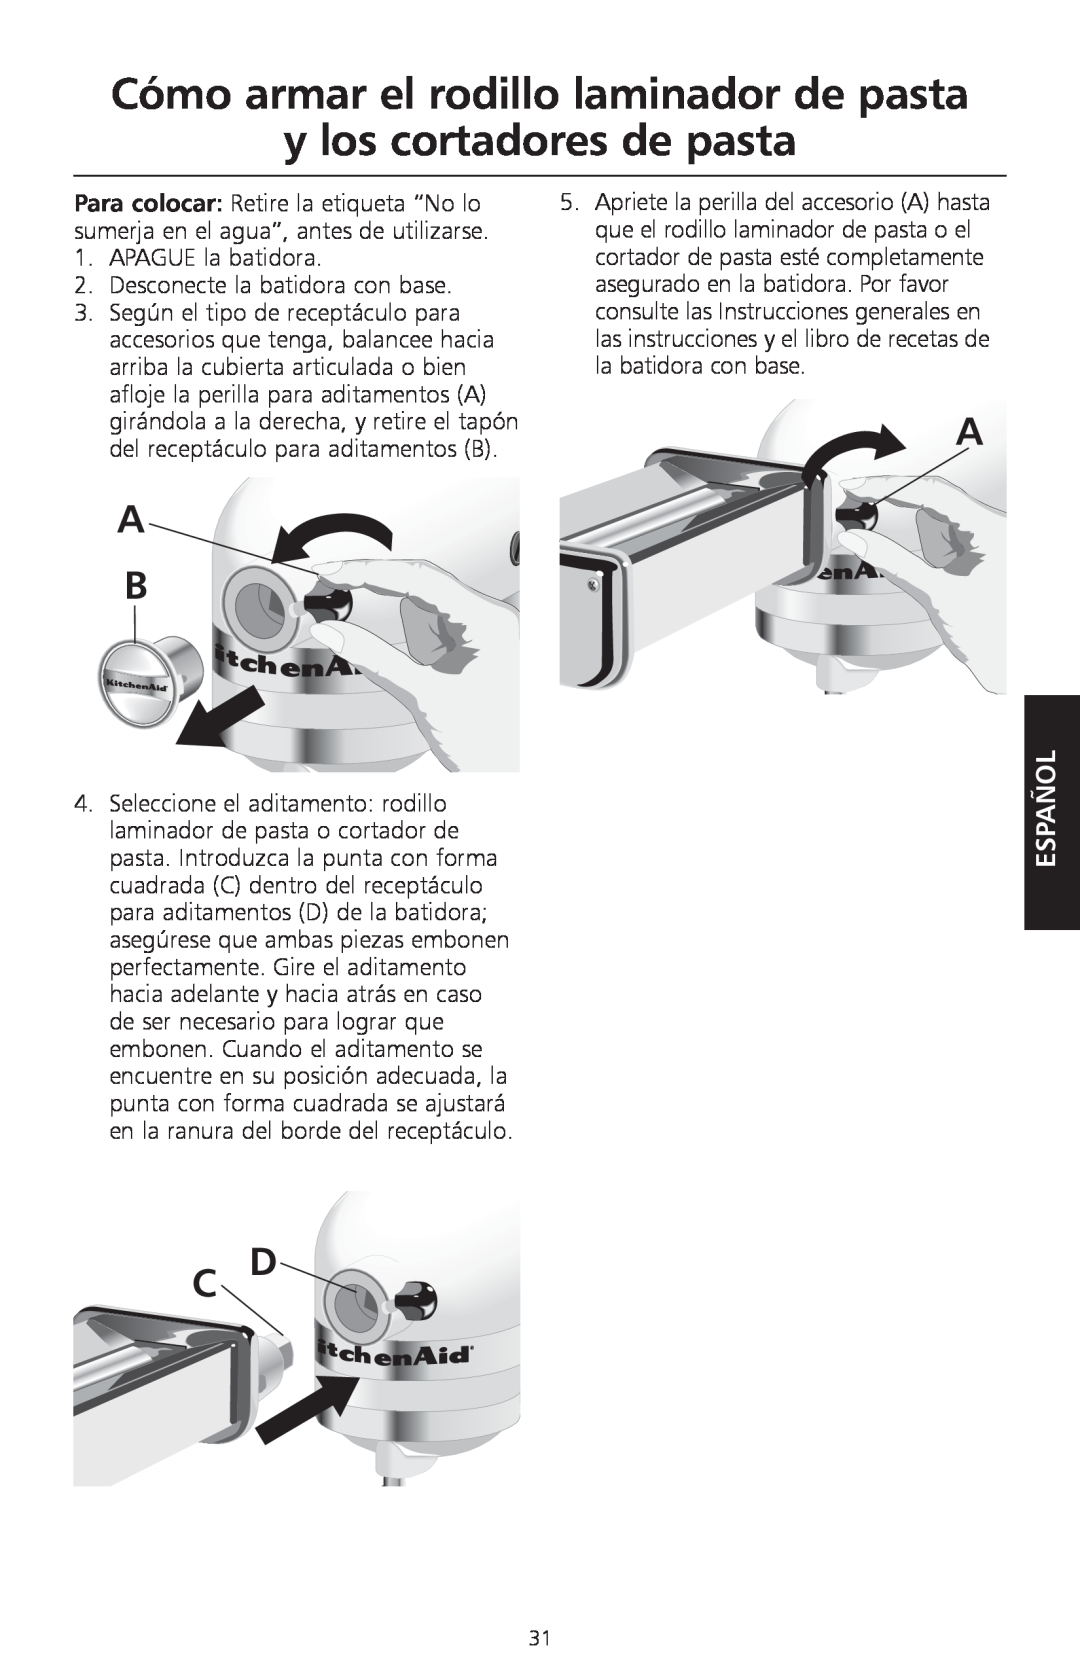 KitchenAid KPEX manual Cómo armar el rodillo laminador de pasta y los cortadores de pasta, Español 